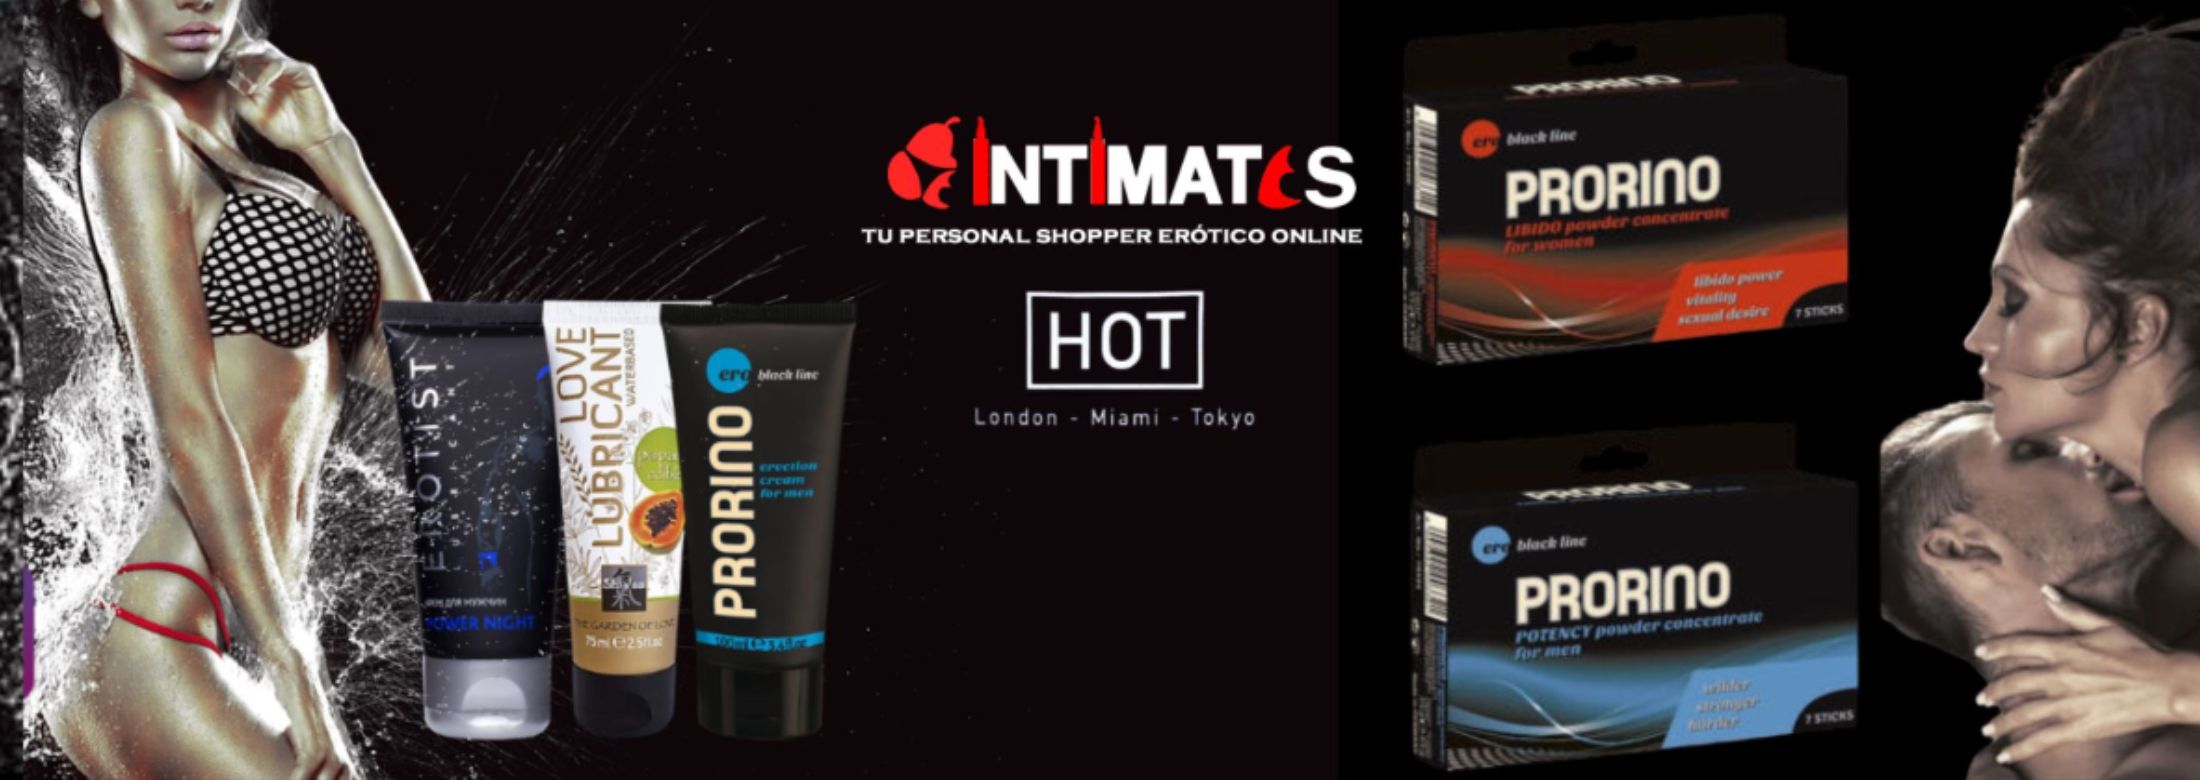 Prorino de Hot en intimates.es "Tu Personal Shopper Erótico Online"